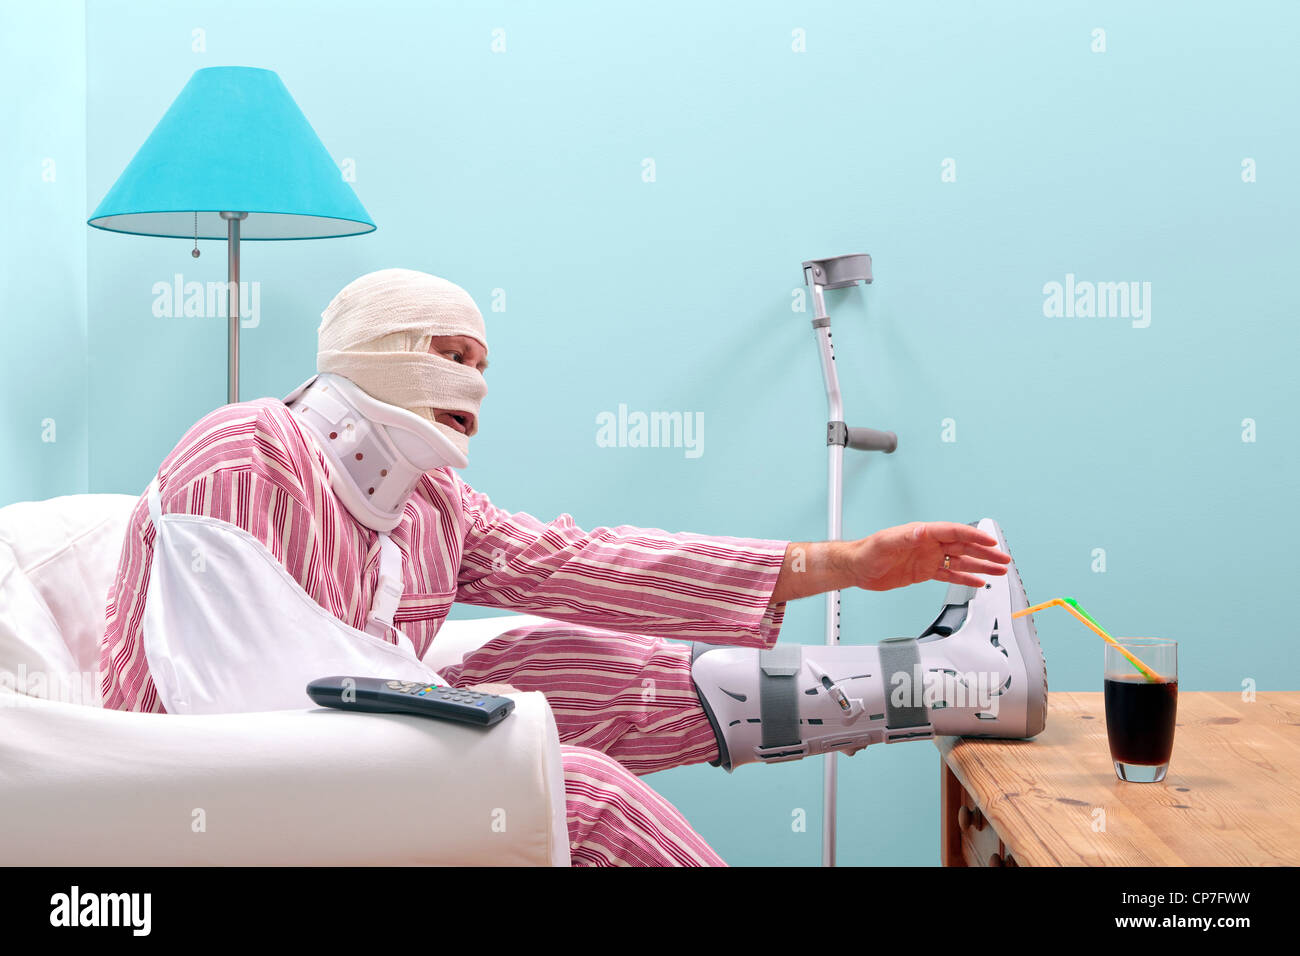 Photo d'un homme blessé en pyjama avec une jambe, la tête bandée, le bras en écharpe et neck brace Banque D'Images